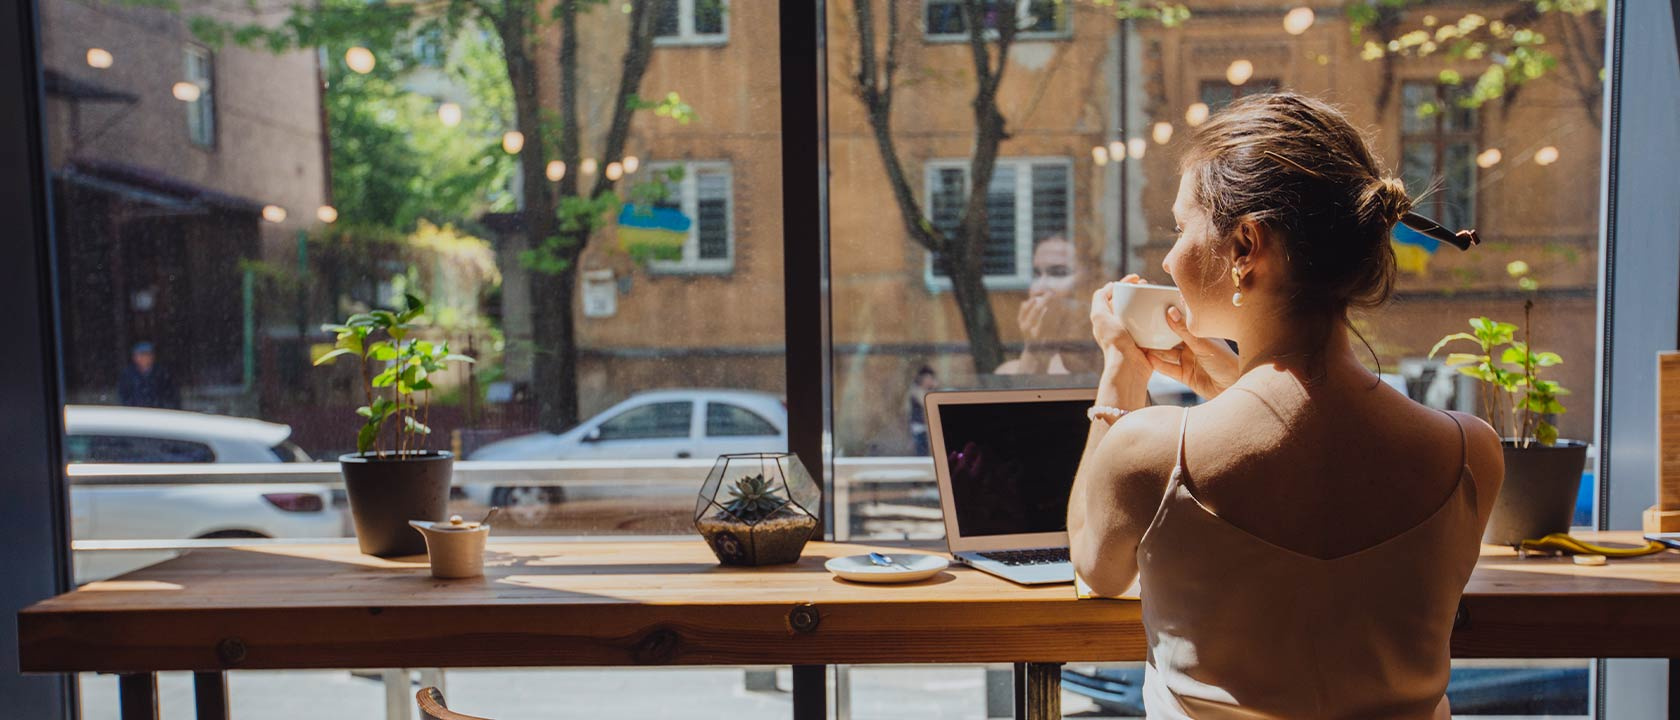 Junge Frau sitzt am Fenster in einem Café und arbeitet.